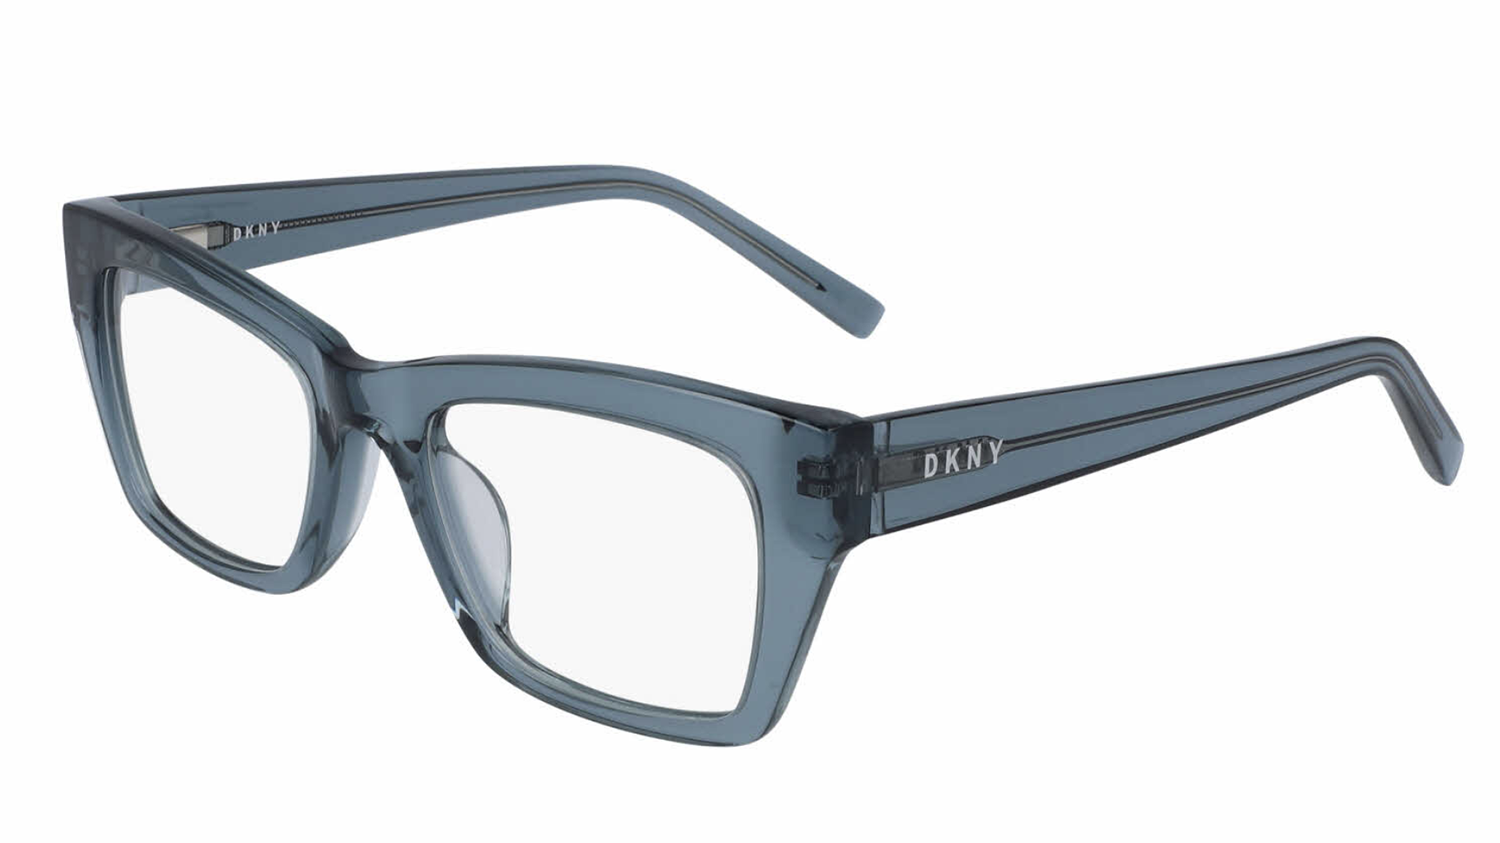 DKNY glasses frames